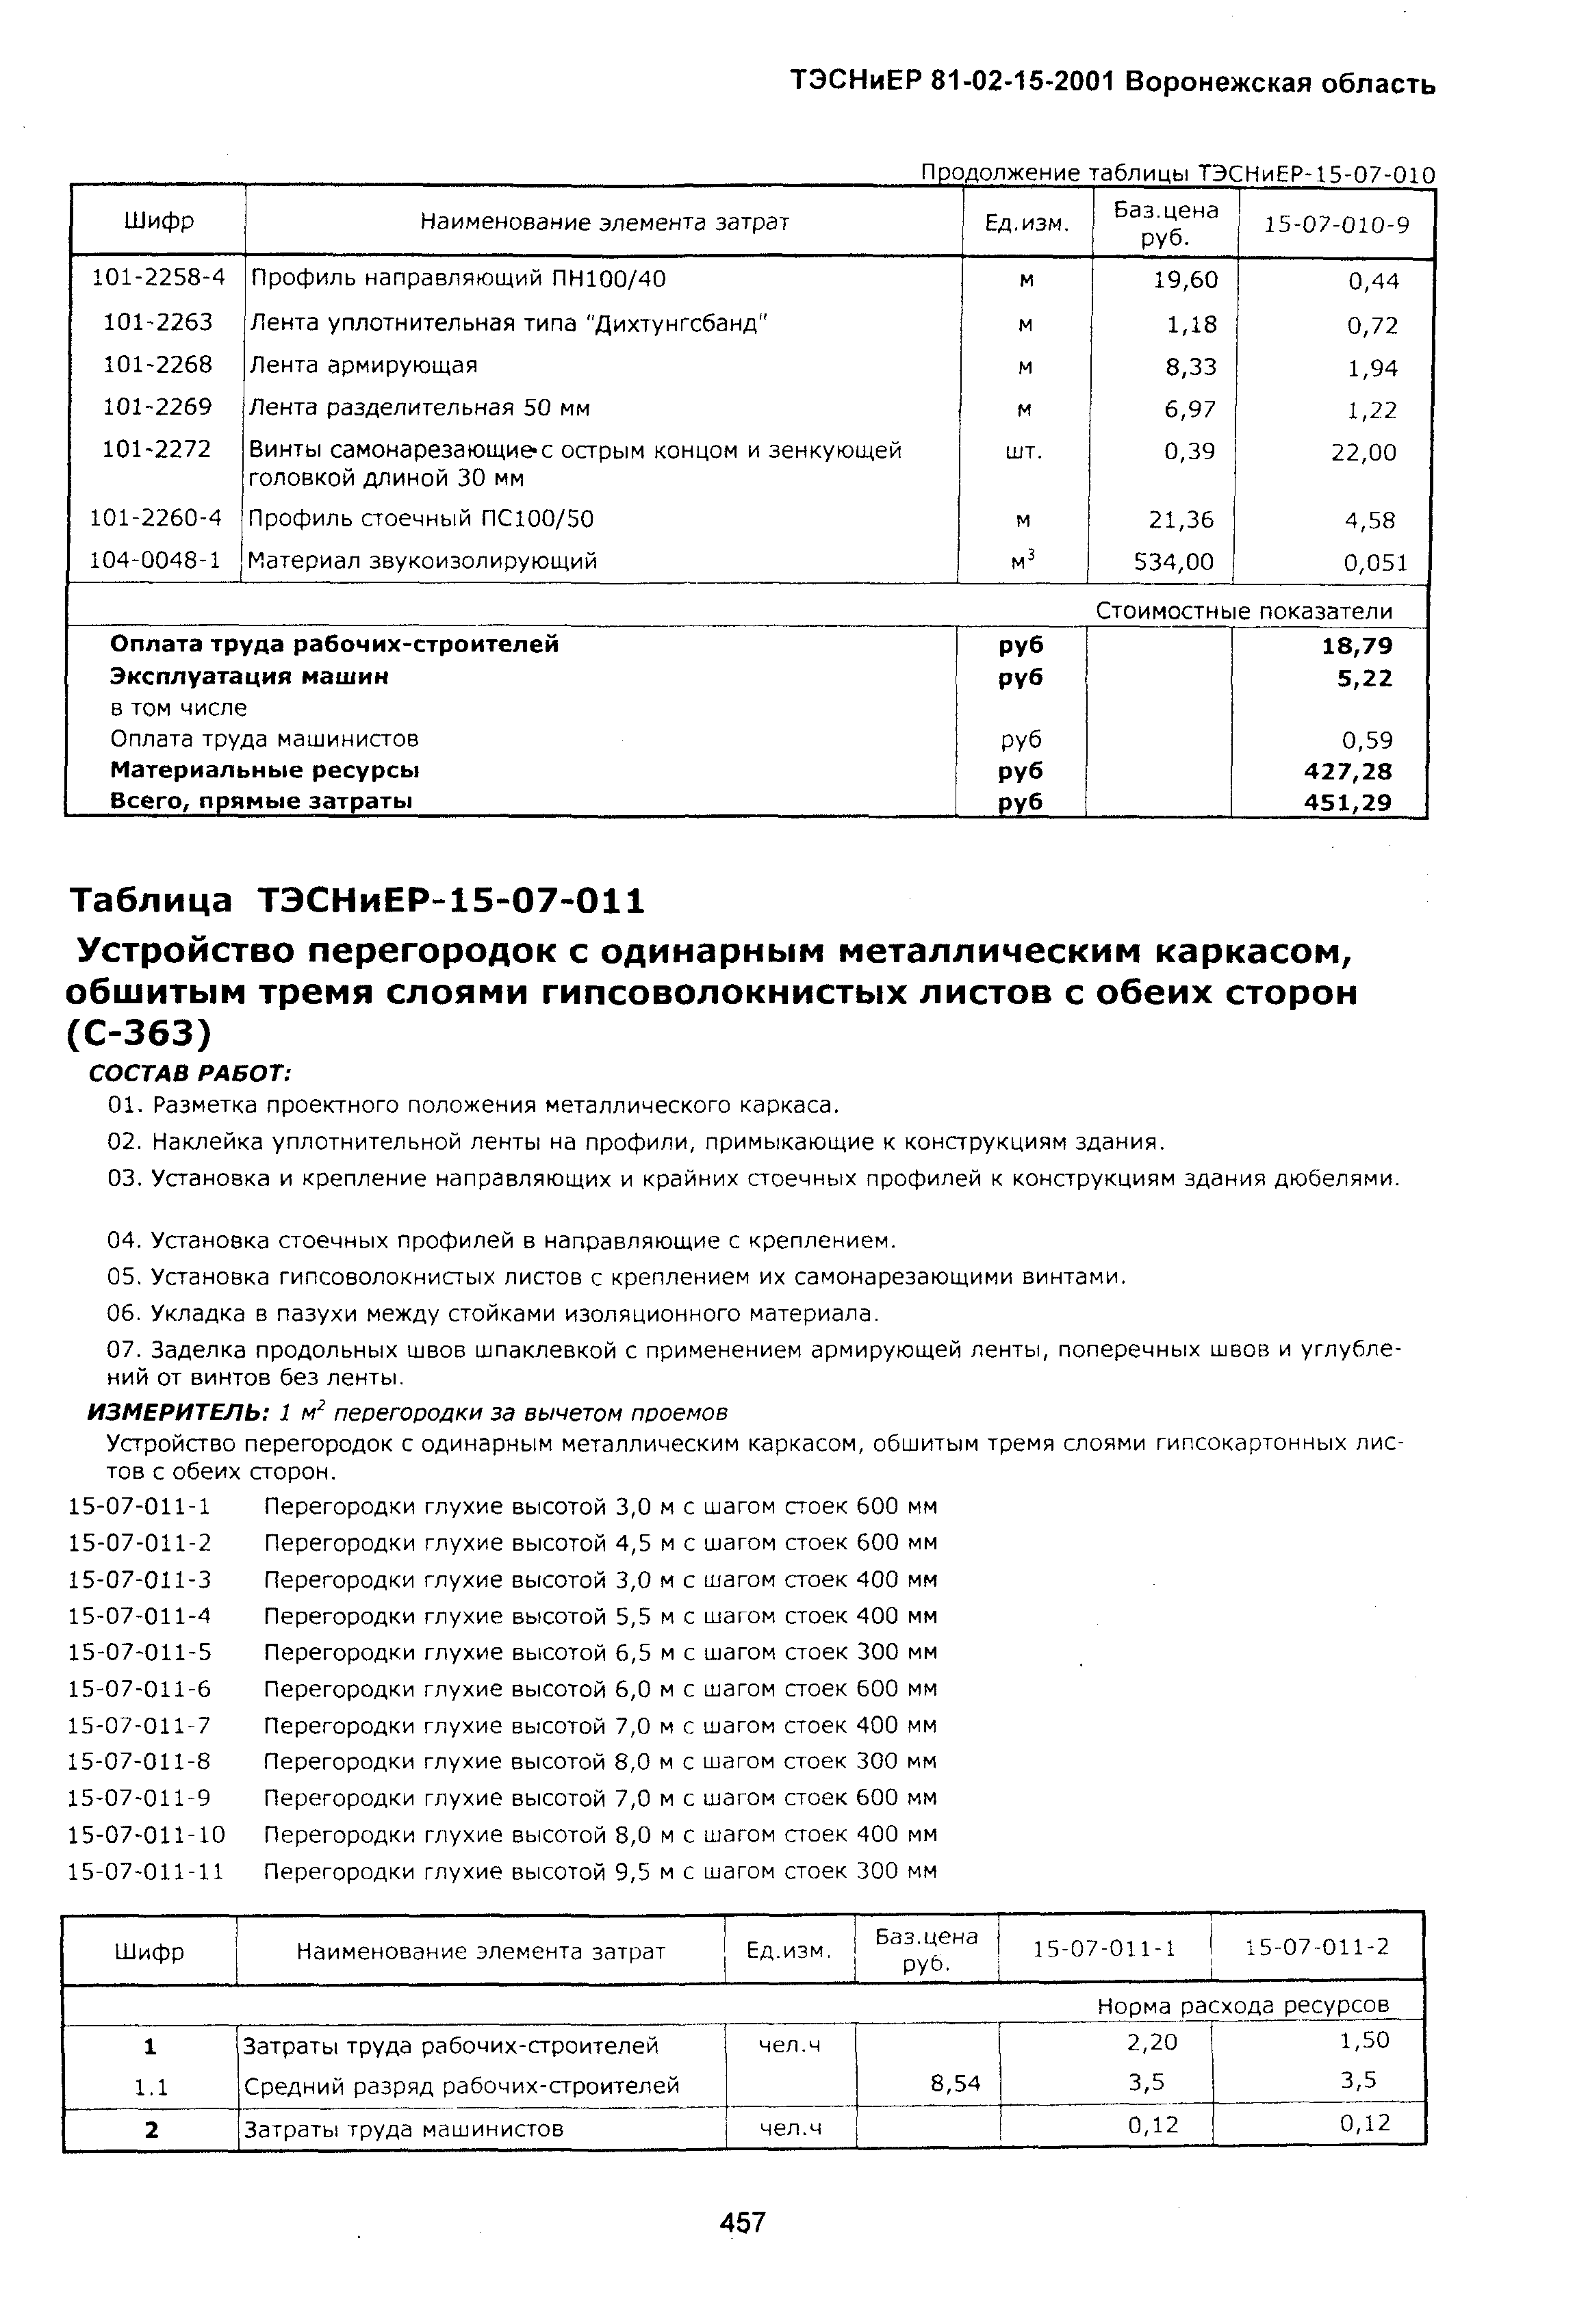 ТЭСНиЕР Воронежской области 81-02-15-2001